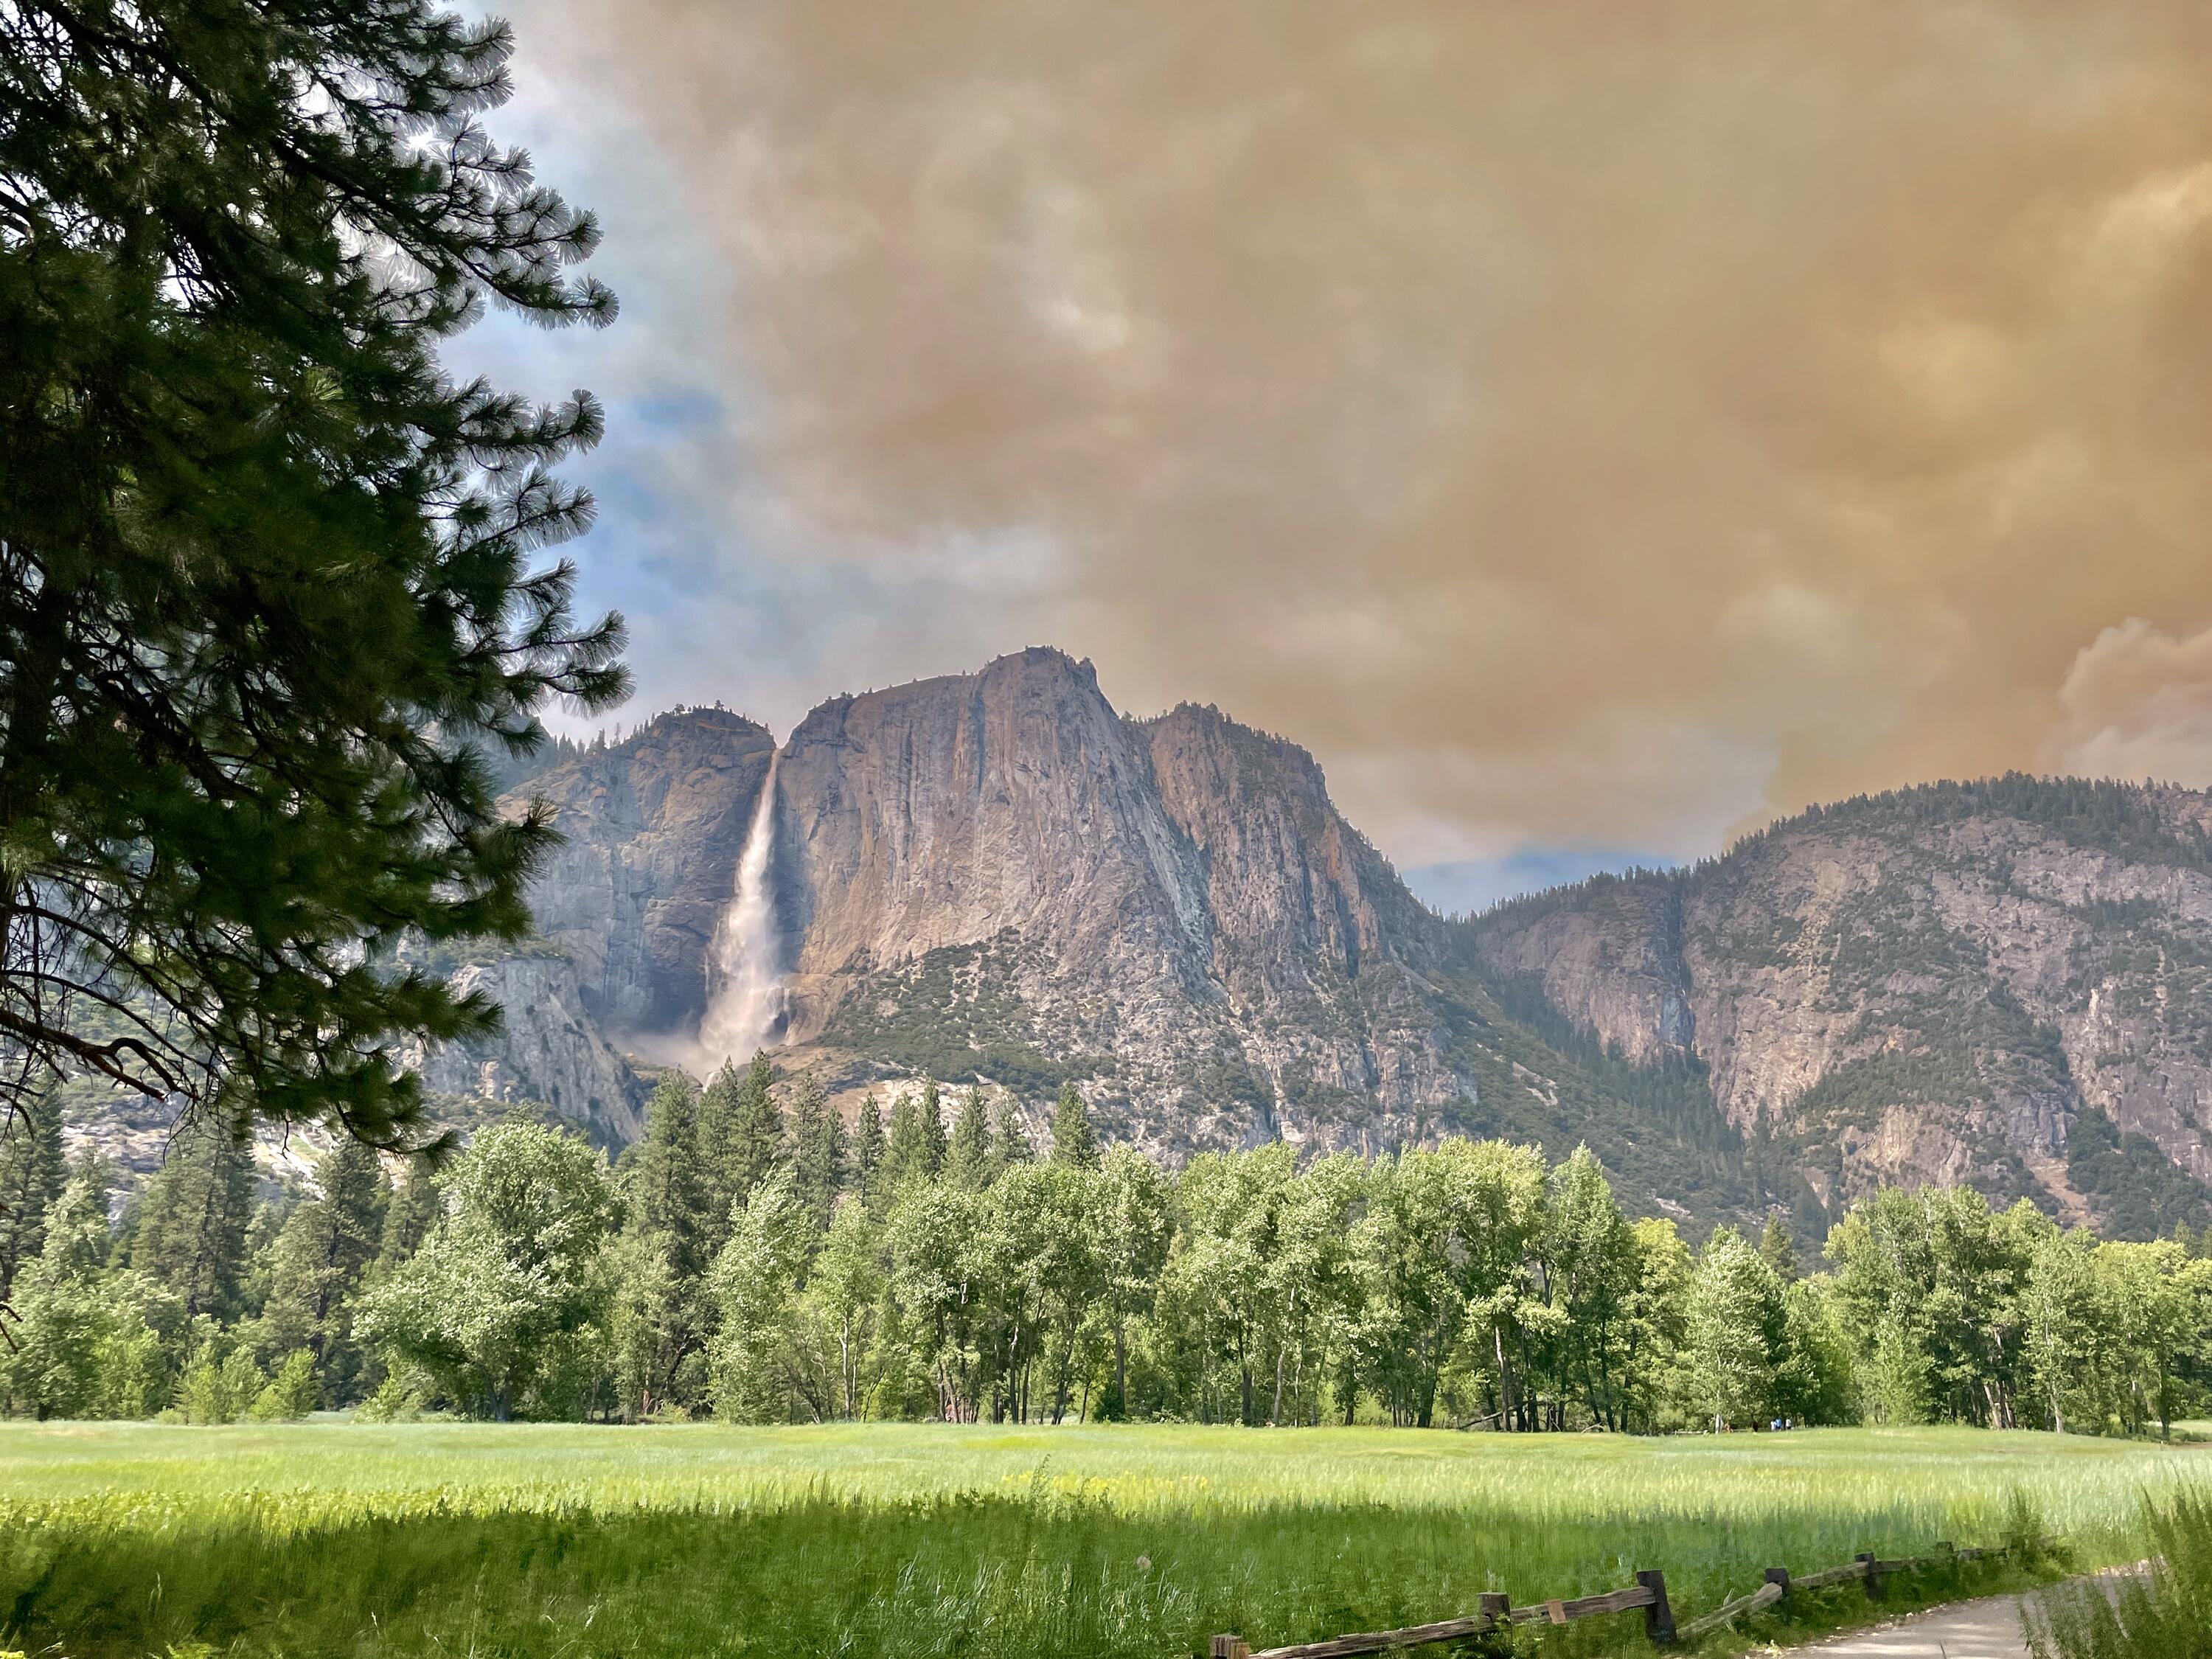 Sam's photo of Yosemite.